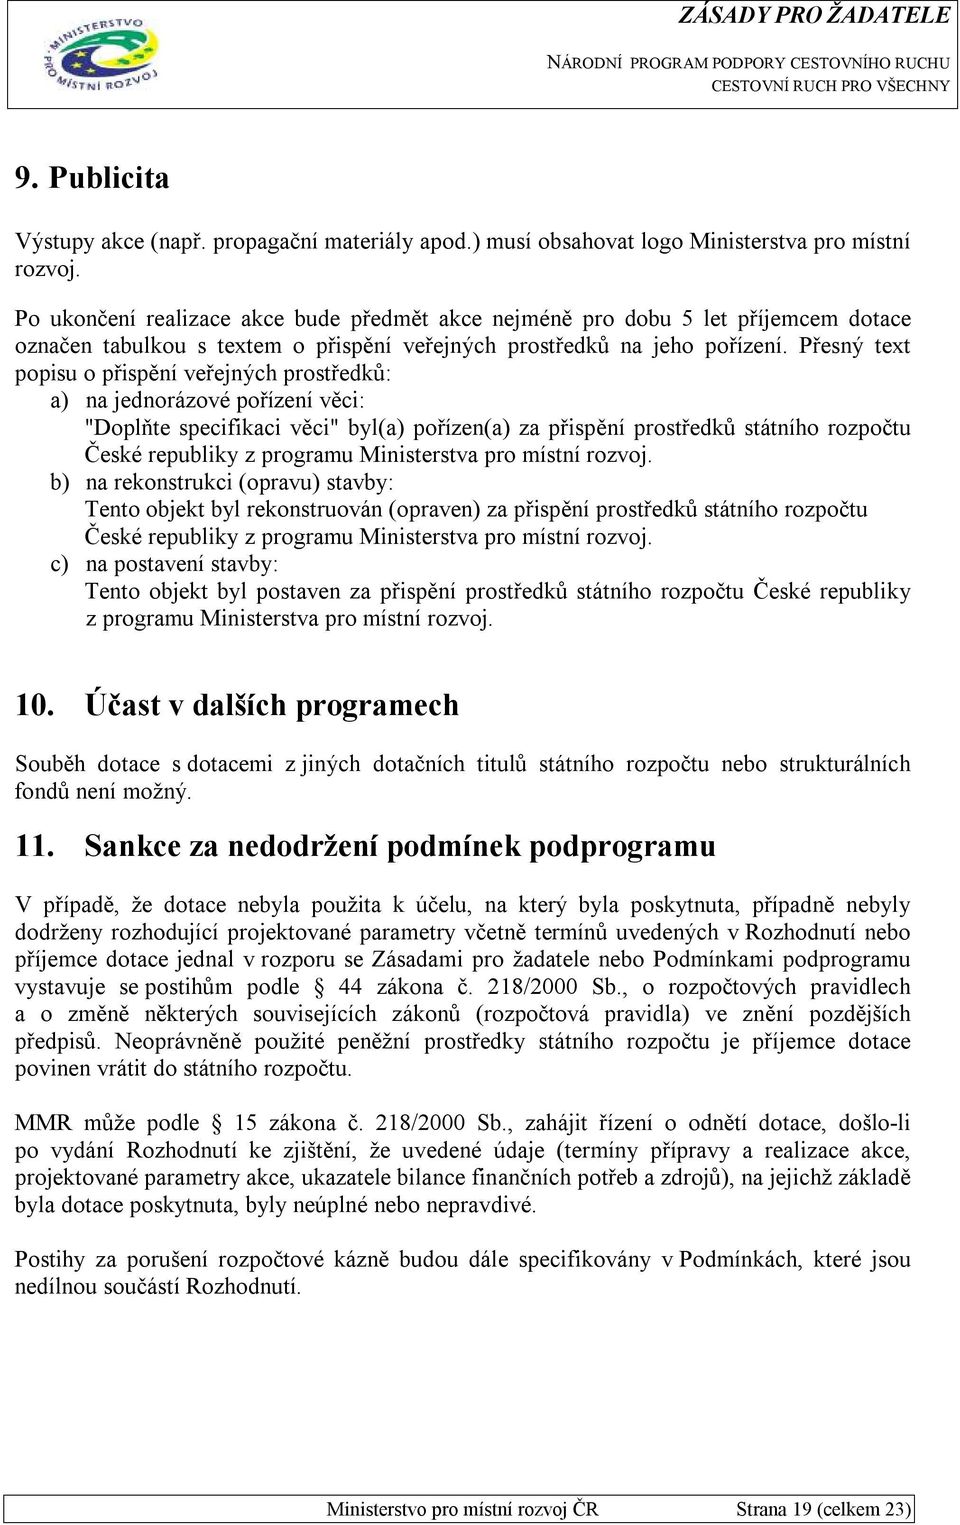 Přesný text popisu o přispění veřejných prostředků: a) na jednorázové pořízení věci: "Doplňte specifikaci věci" byl(a) pořízen(a) za přispění prostředků státního rozpočtu České republiky z programu